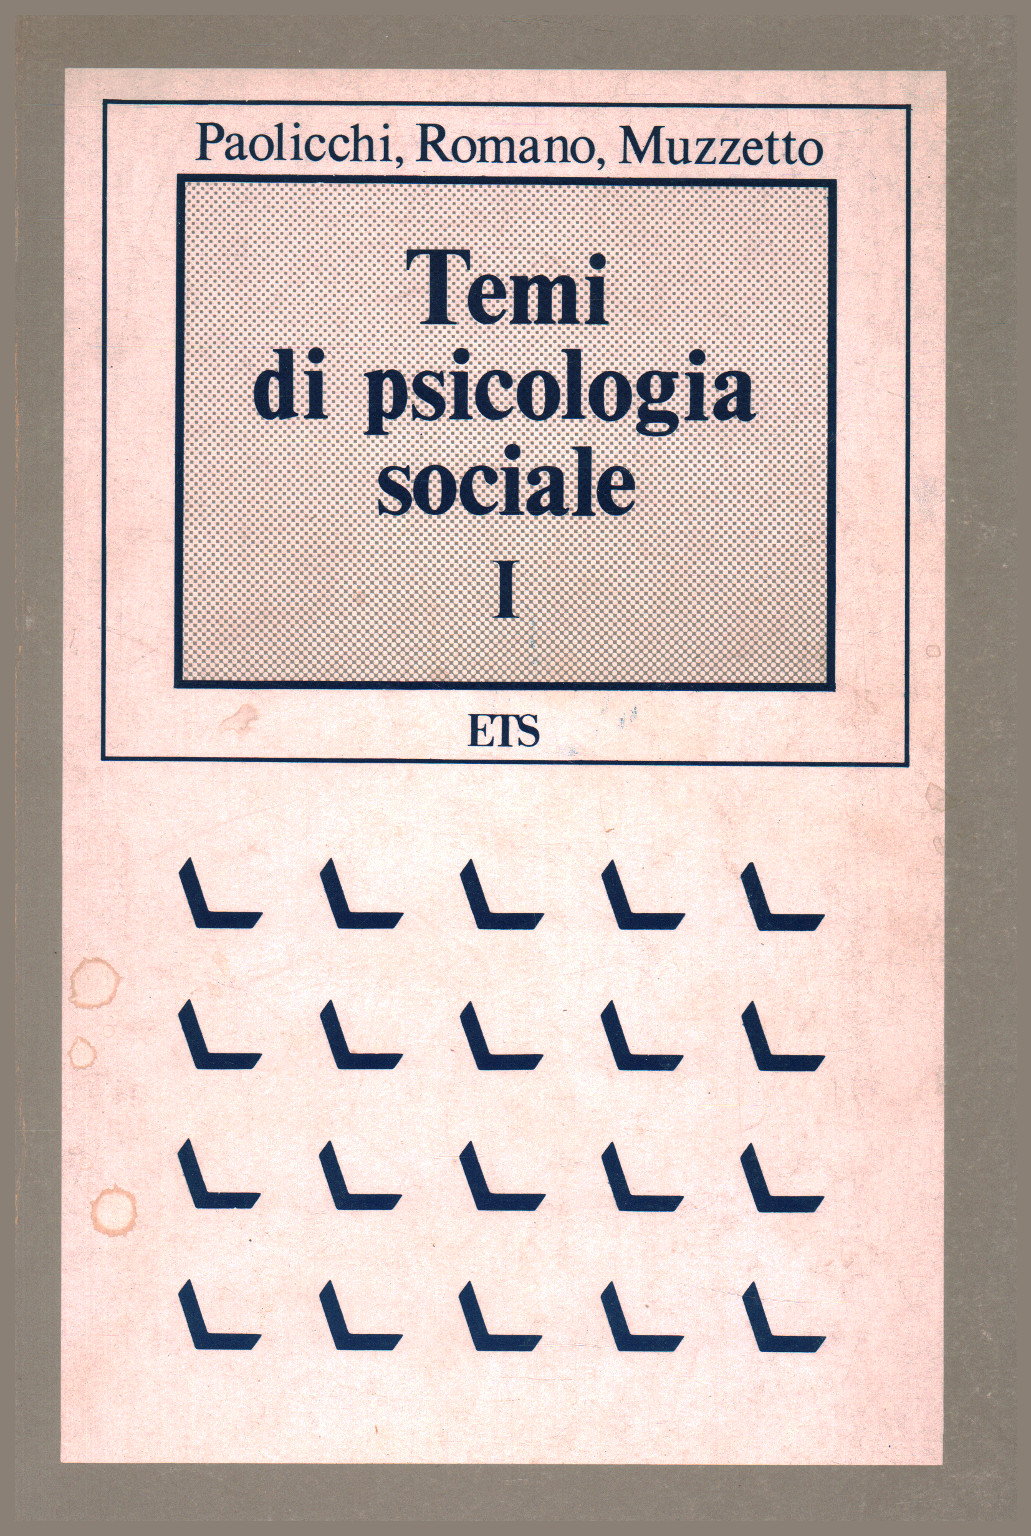 Temas en psicología social I, s.una.